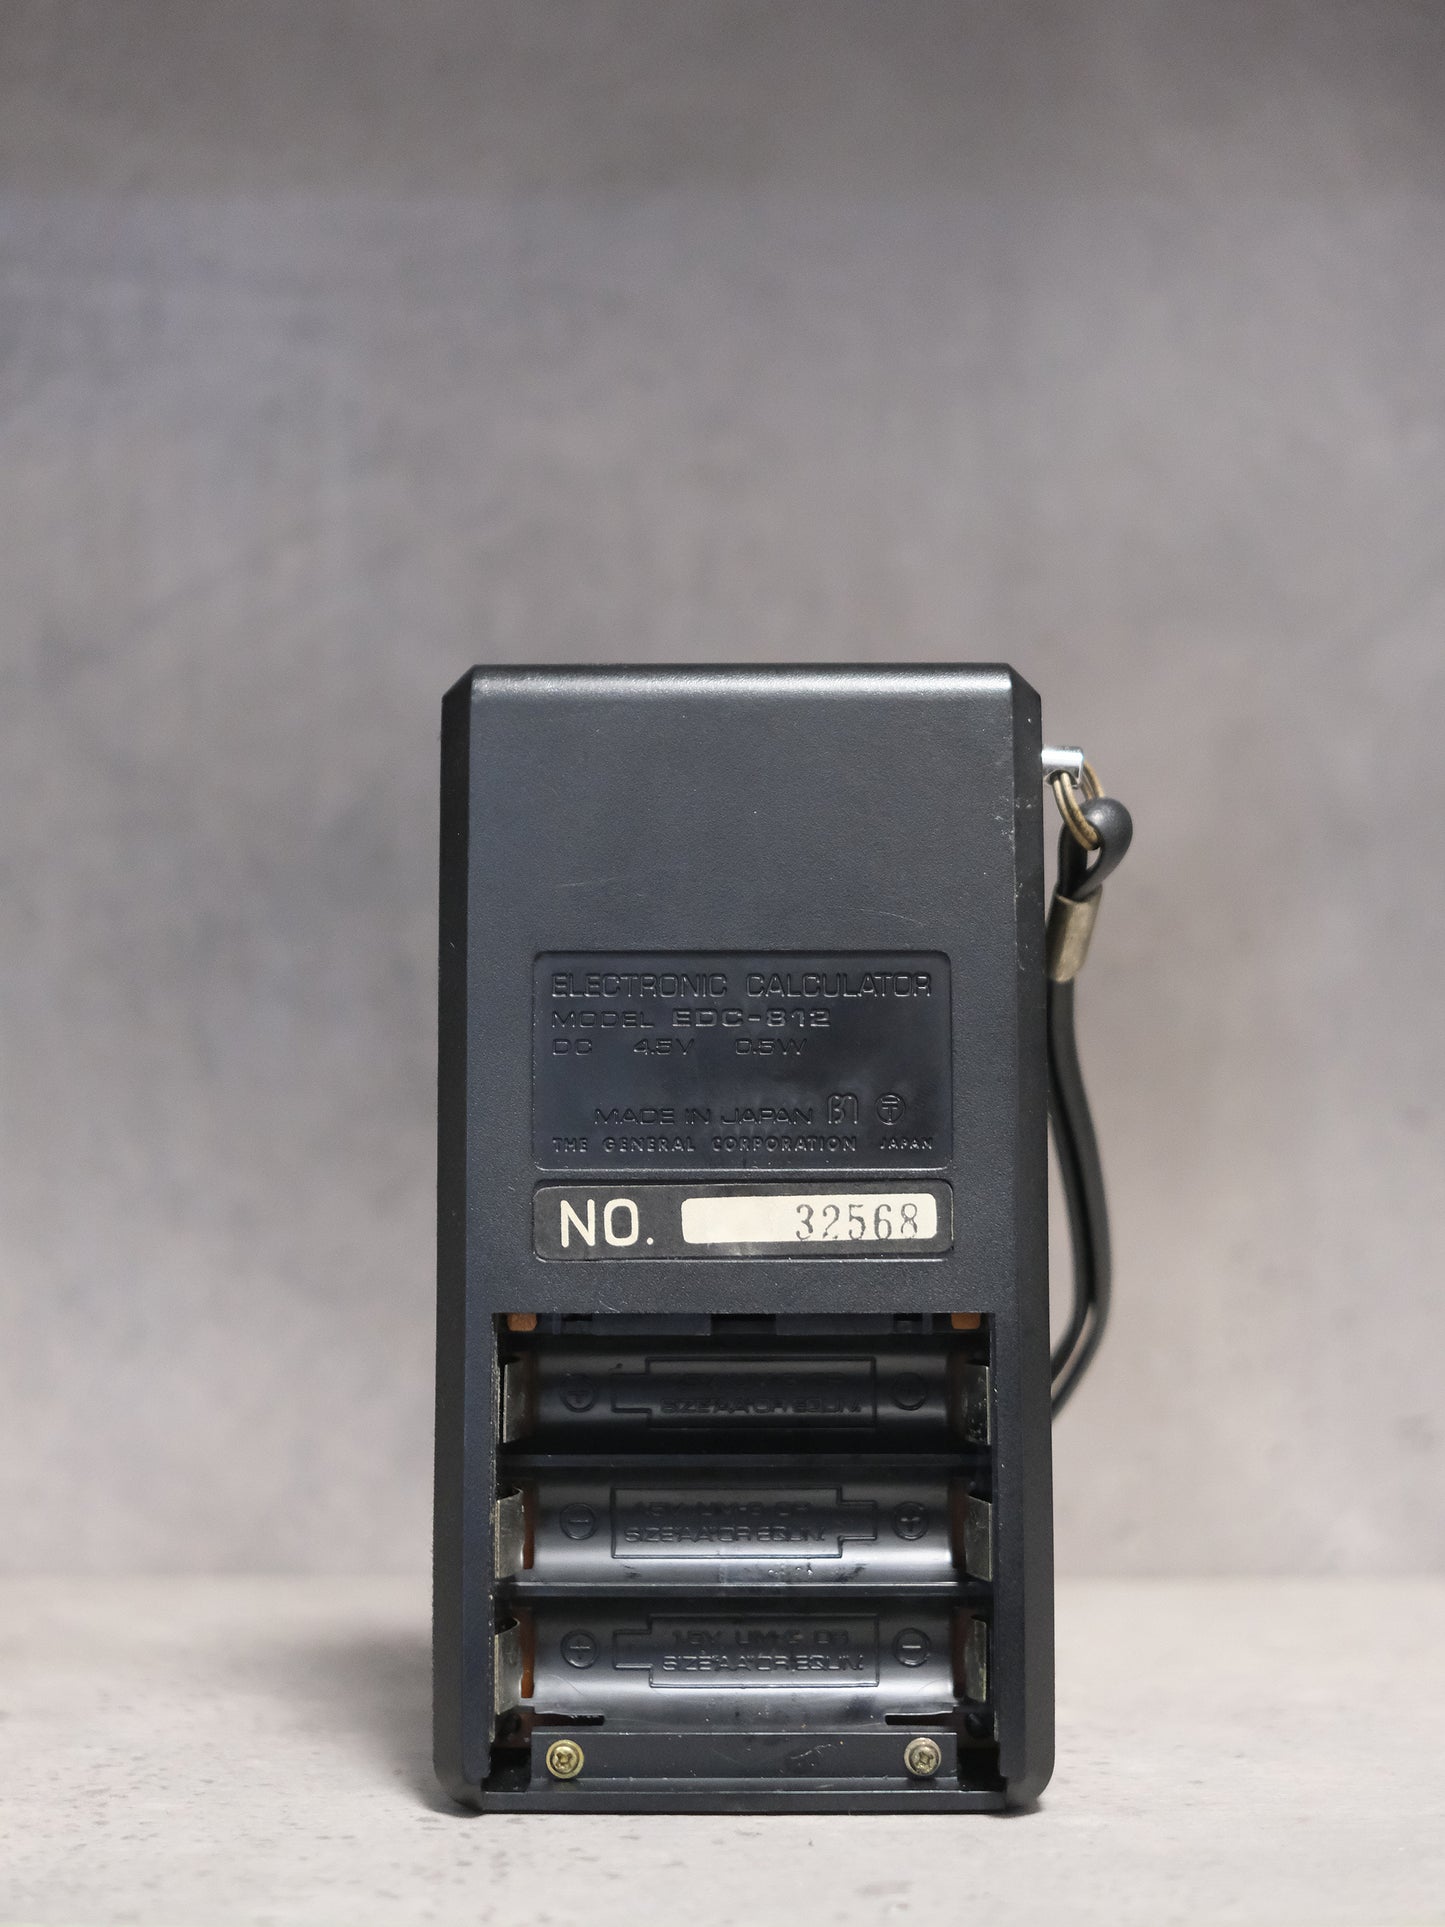 日本製 1975 Teknika General EDC-812 VFD 紅字 營光管 計數機 電卓 Calculator